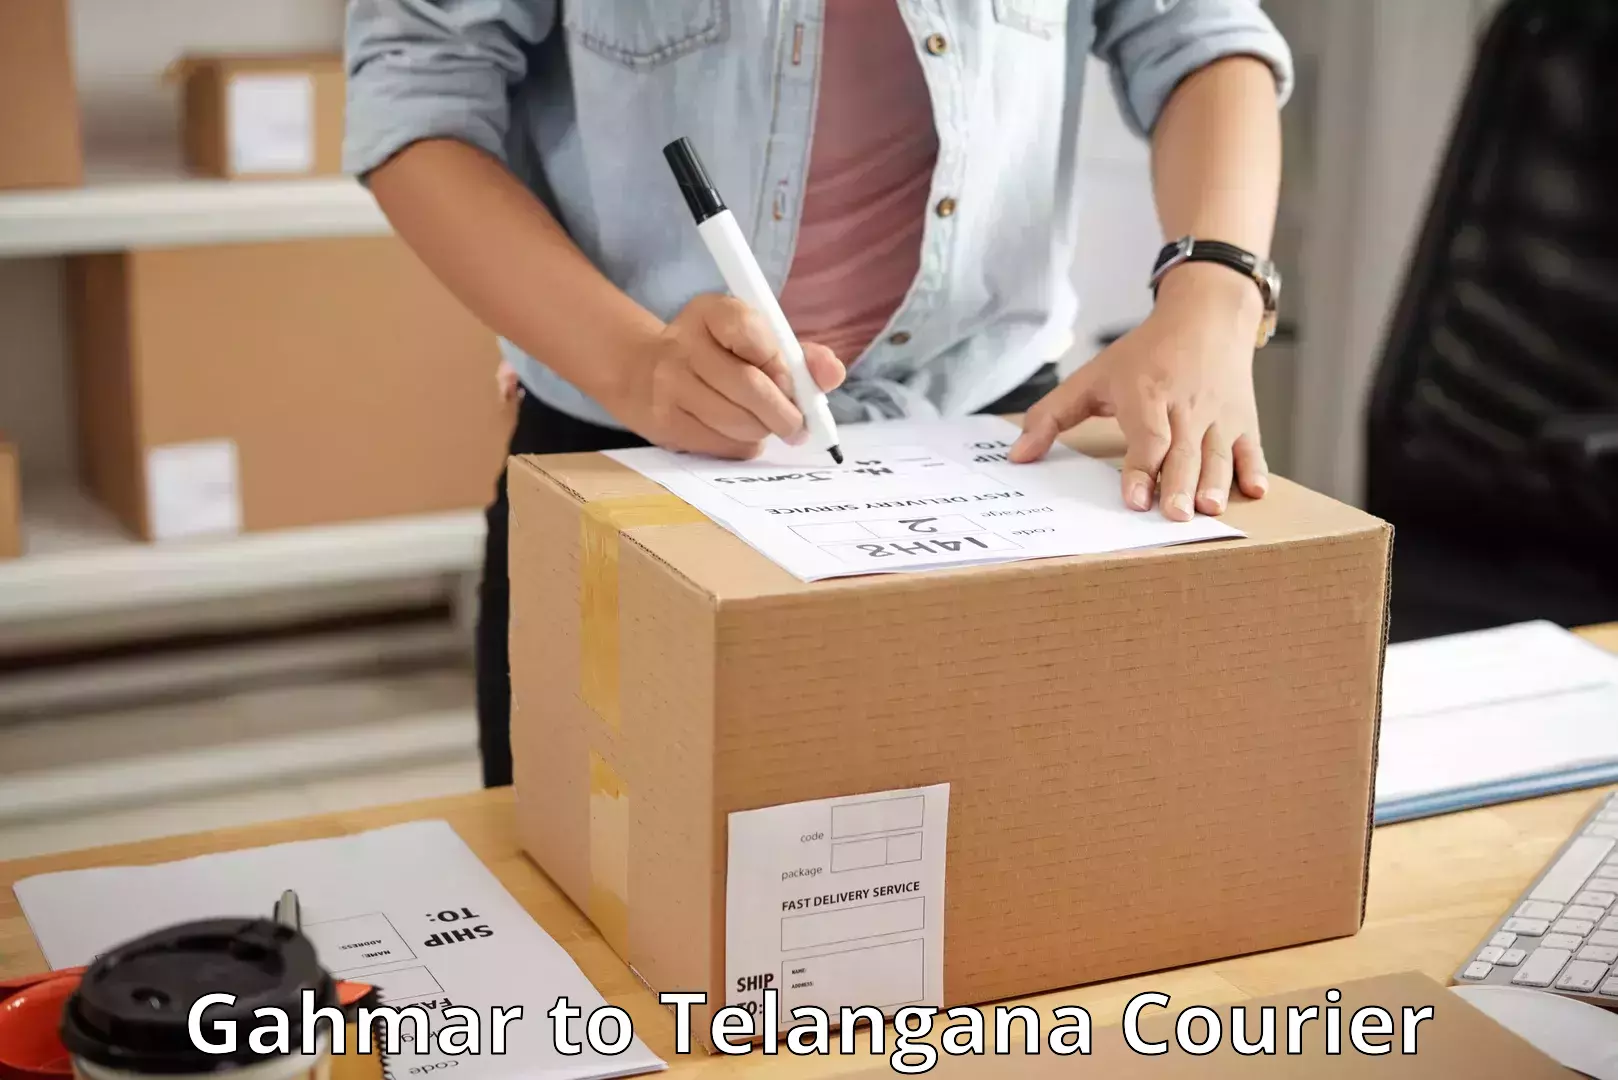 Quality courier services Gahmar to Jannaram